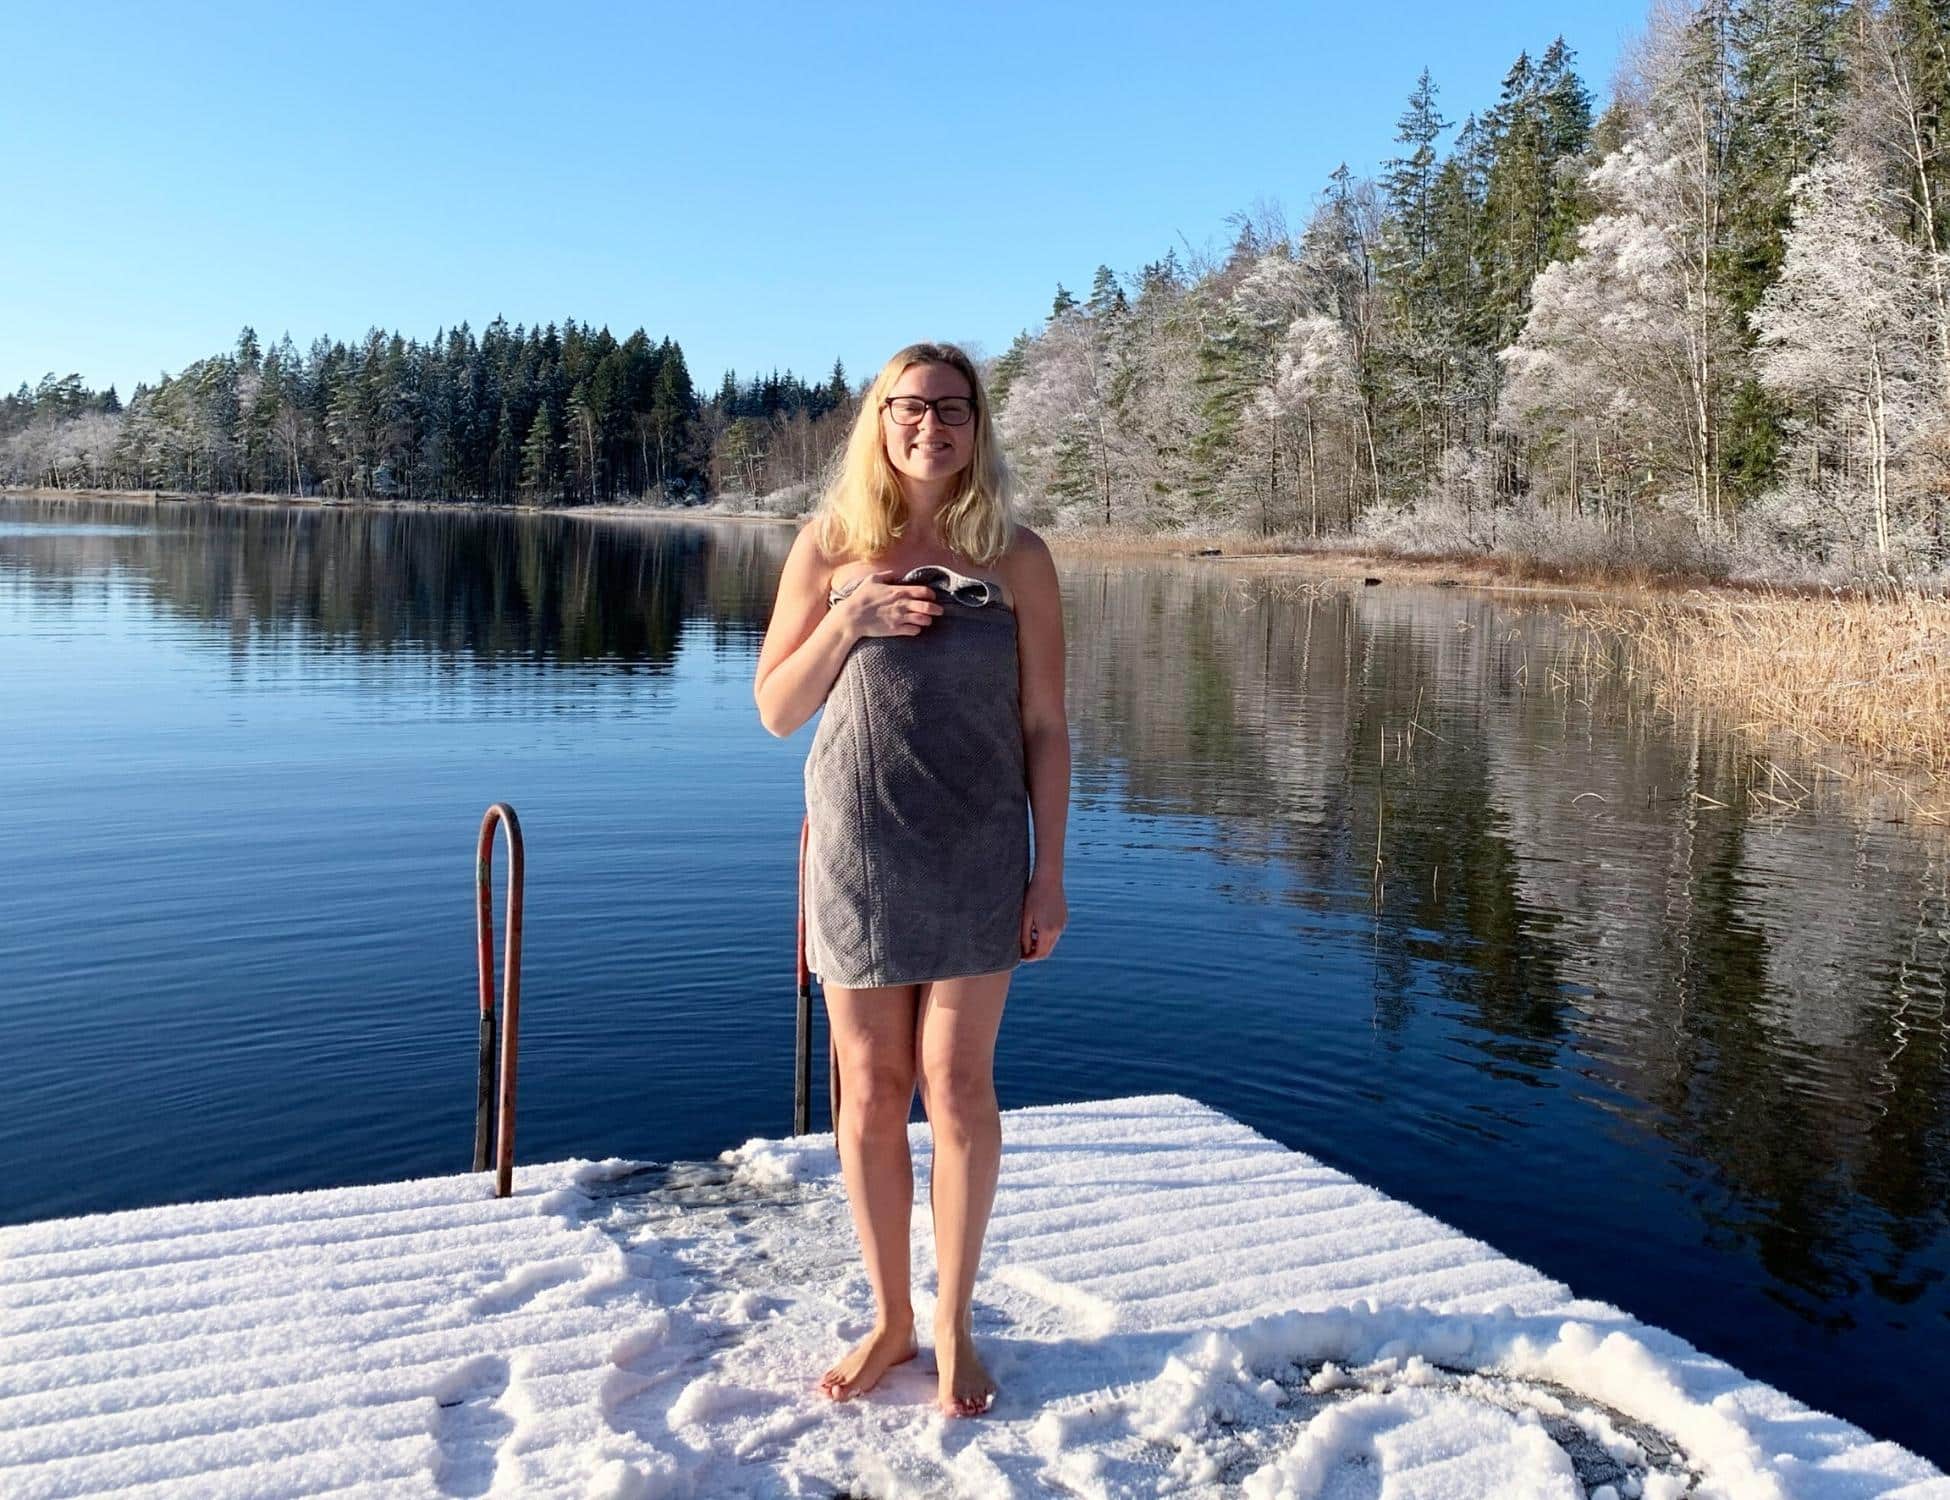 Cathrine efter vinterbadning i snelandsskab på yogaferie i Sverige